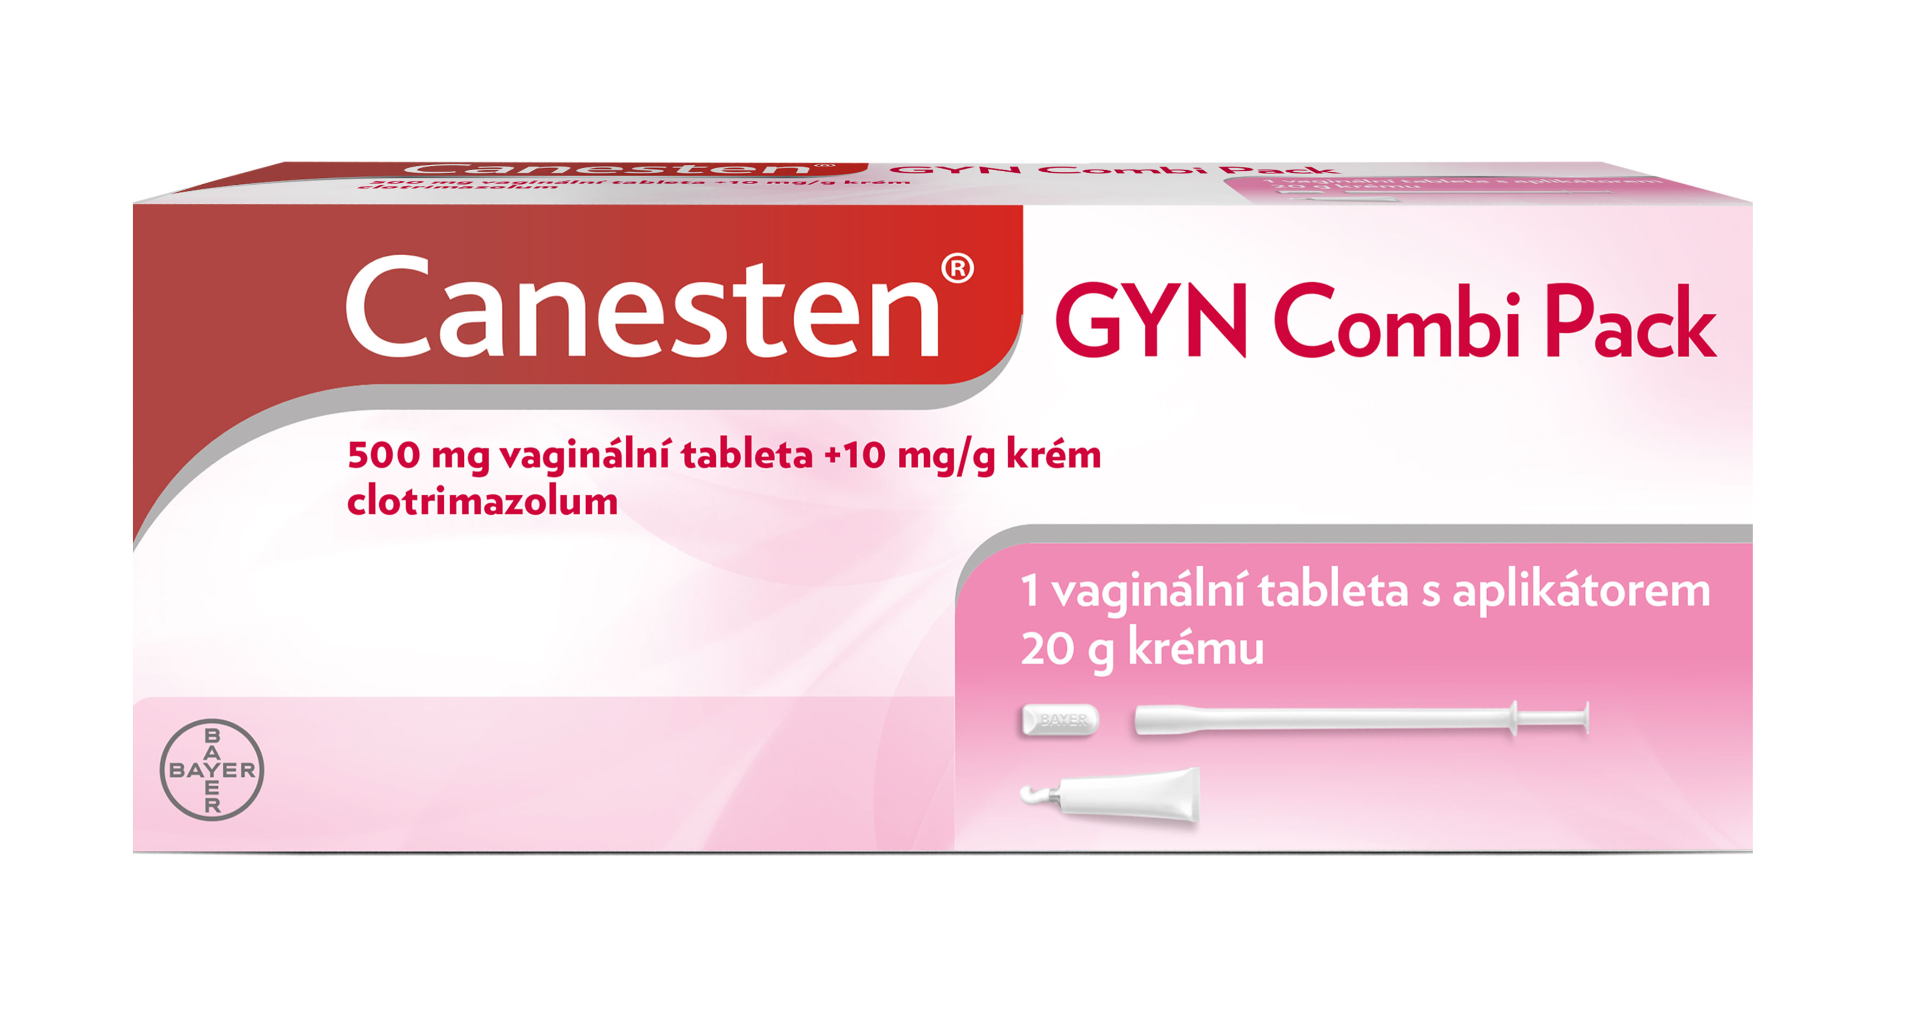 Canesten GYN COMBI PACK vaginální tableta a krém Canesten